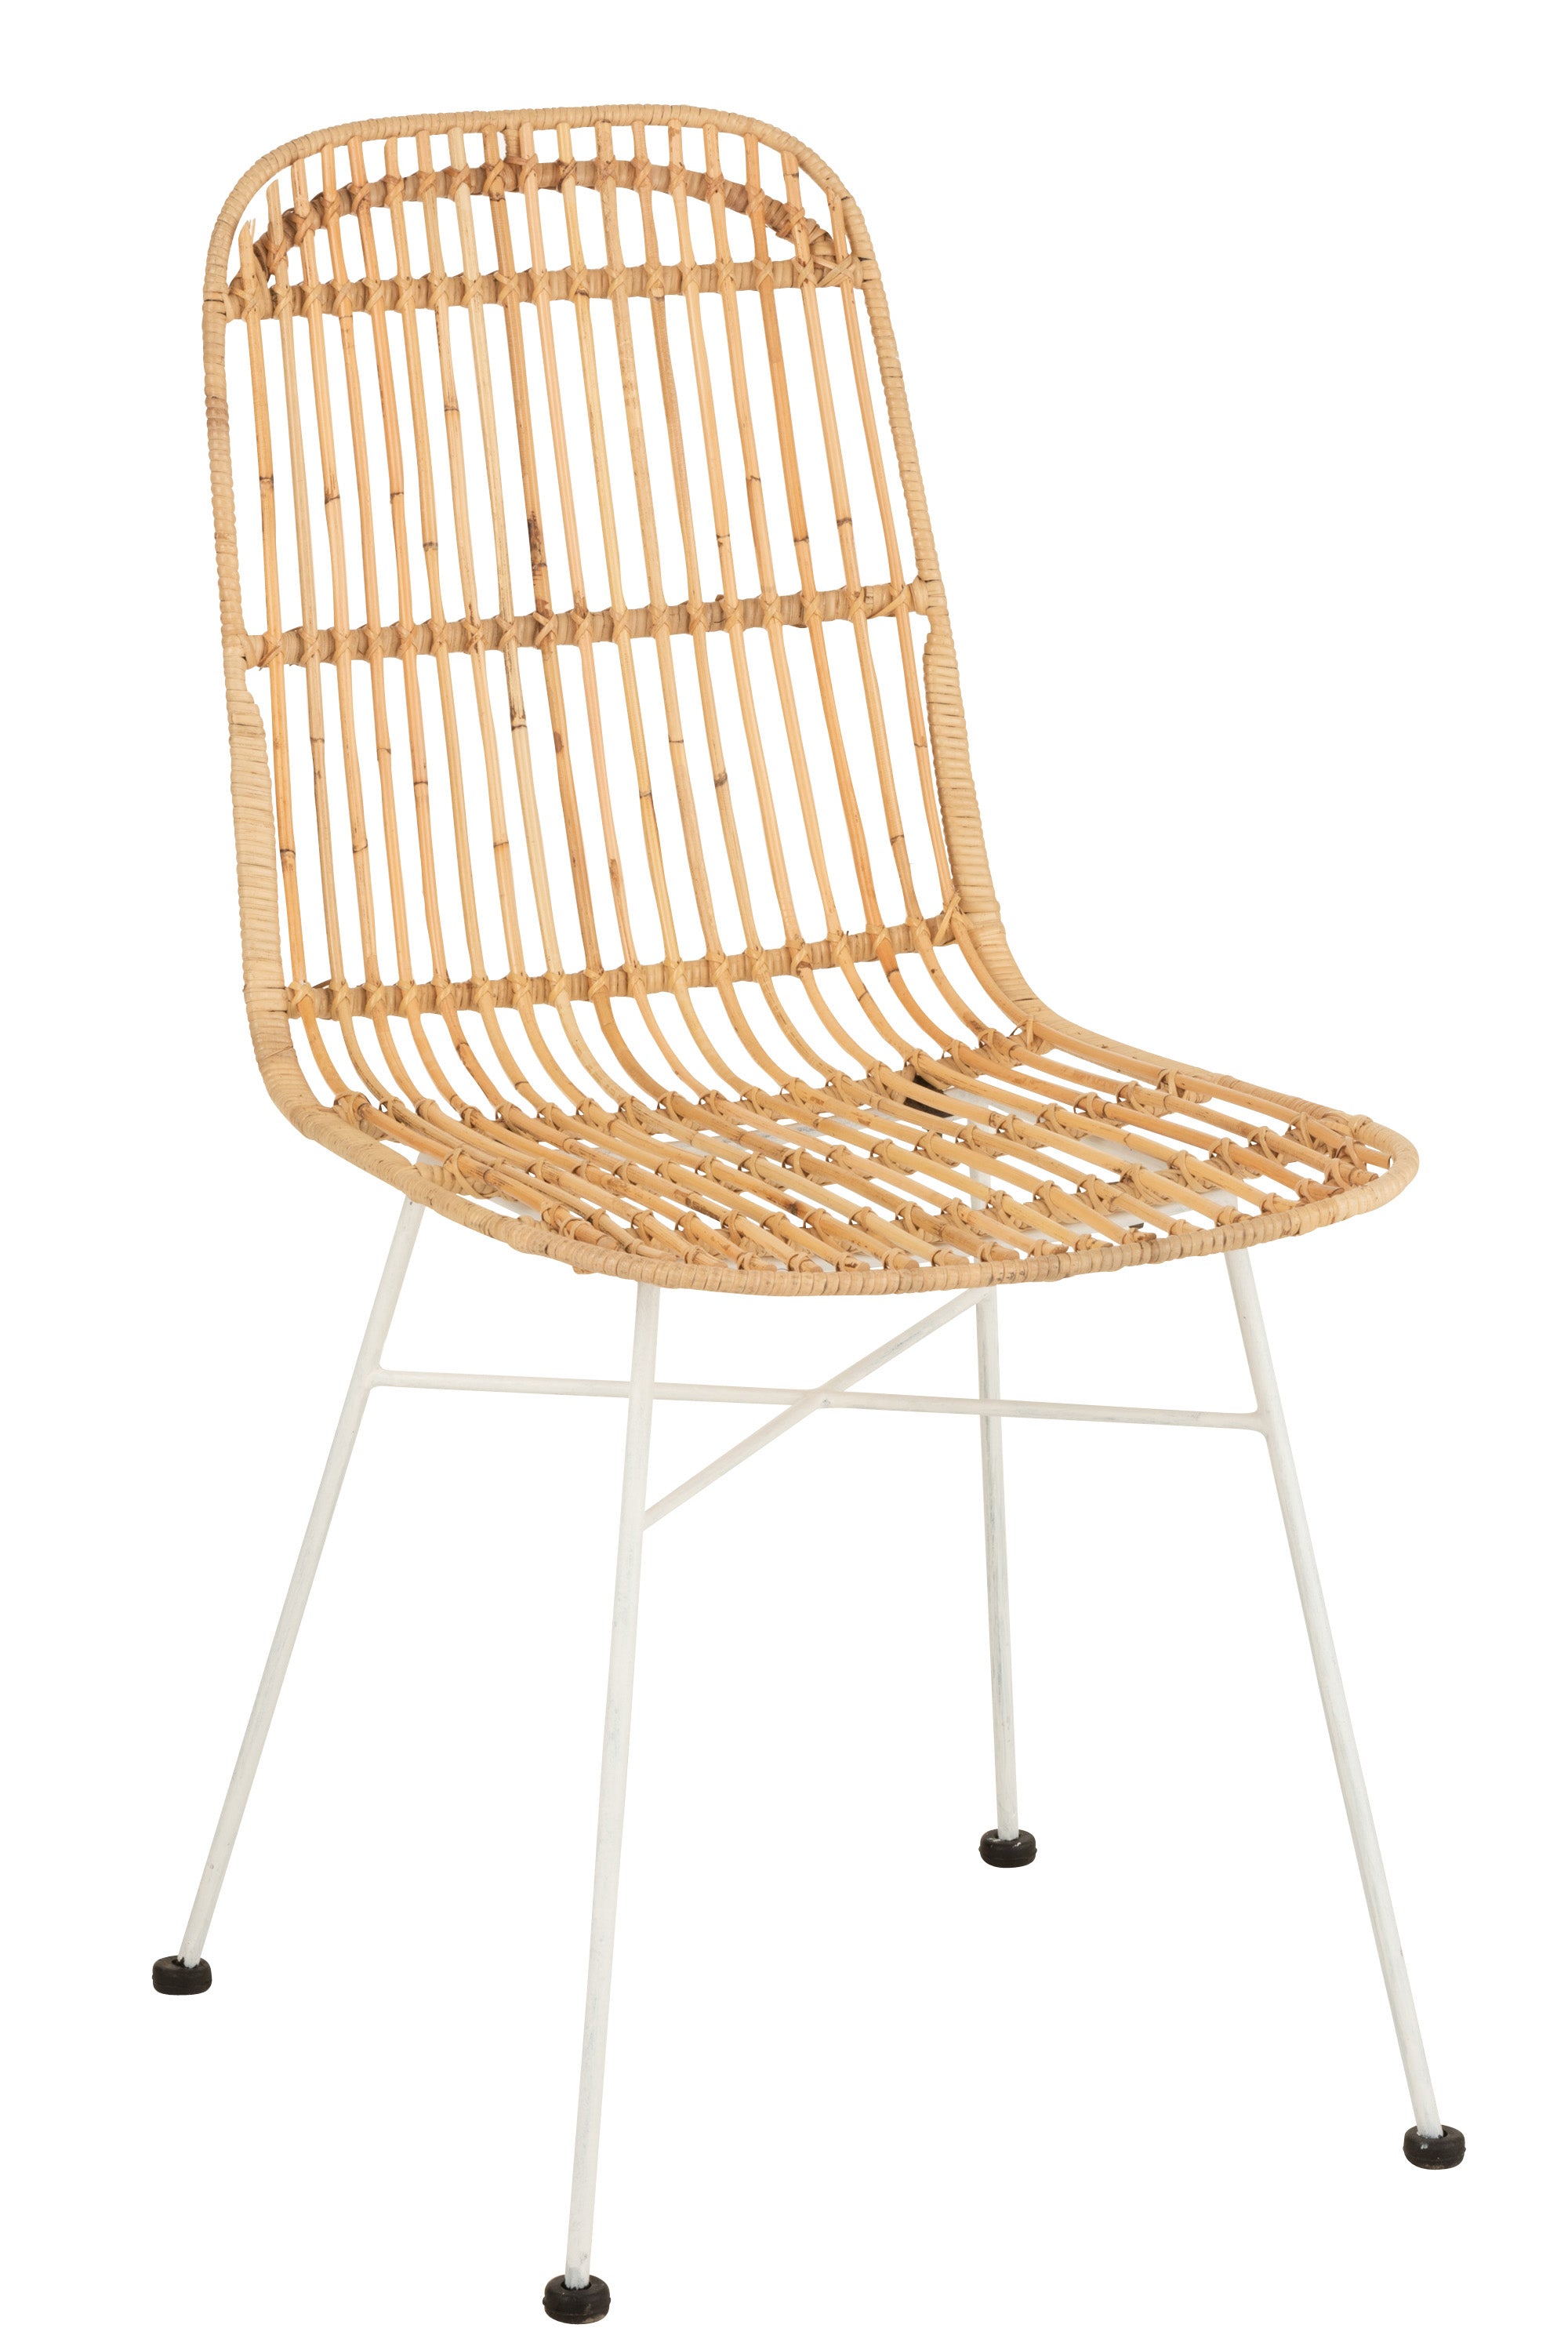 Stuhl mit einem Gestell aus dünnen, weißen Metallbeinen, verstärkt mit einem weißem Metallkreuz, Bodenschutz durch schwarze Gummistopfen; darauf eine Sitzschale aus dünnen Rattangestangen, die Ecken sind abgerundet.